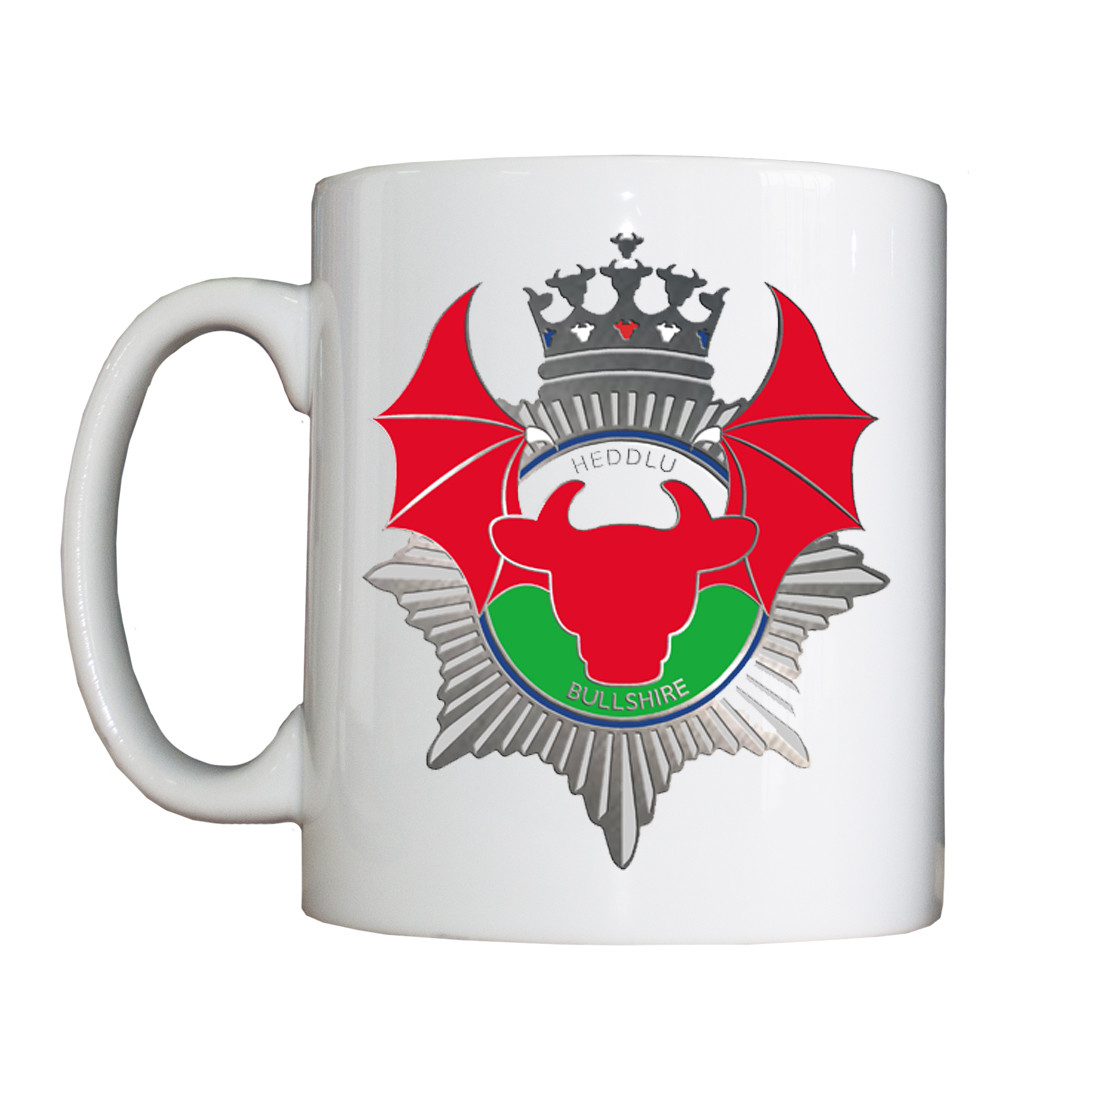 Personalised 'Heddlu Bullshire' Drinking Vessel (Mug)